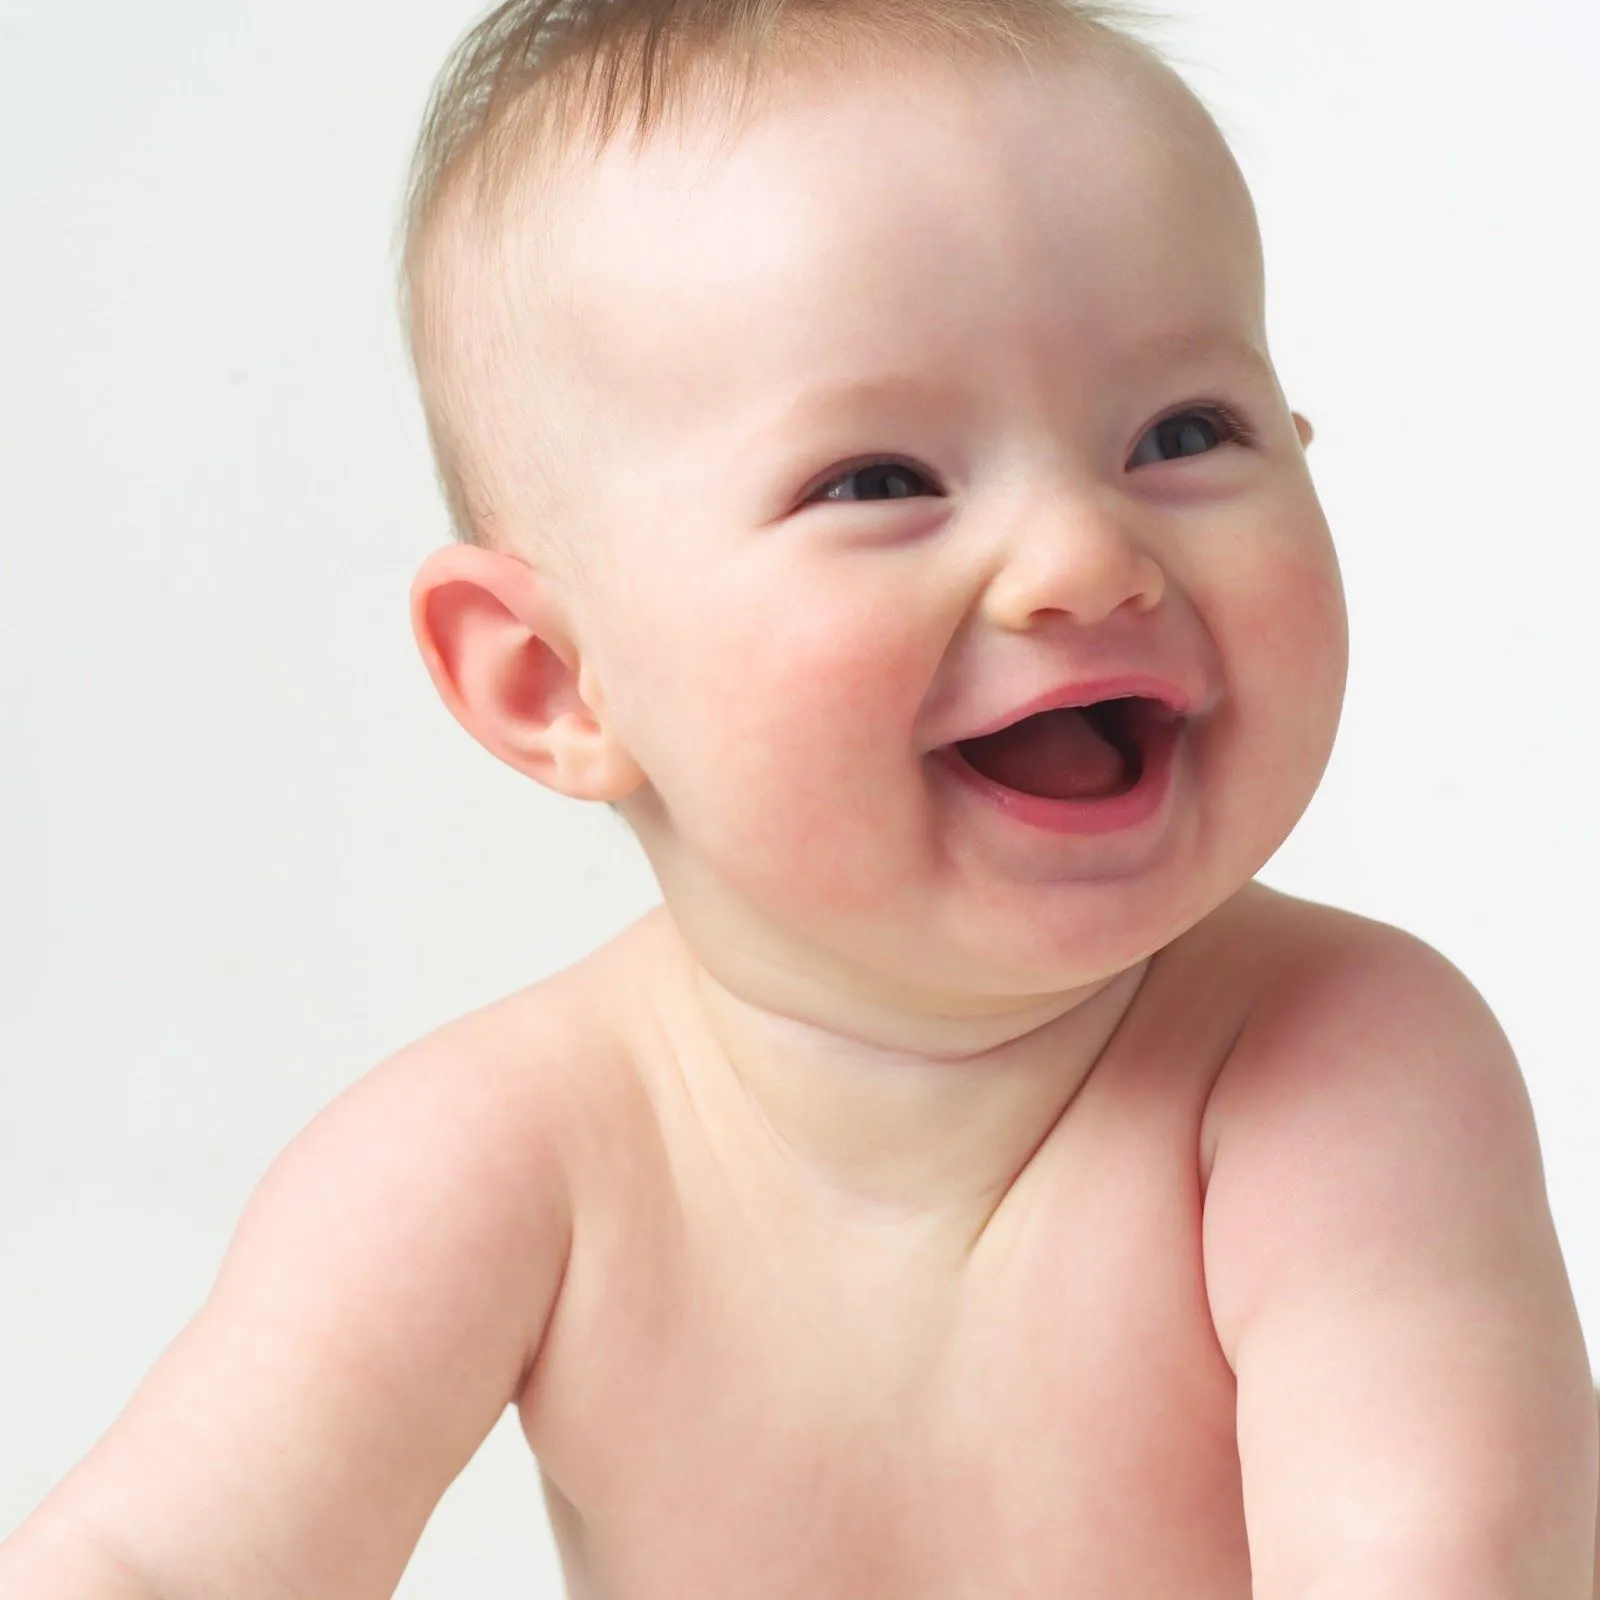 Imagenes de bebes tiernos ~ Los 20 mejores temas para Windows 7